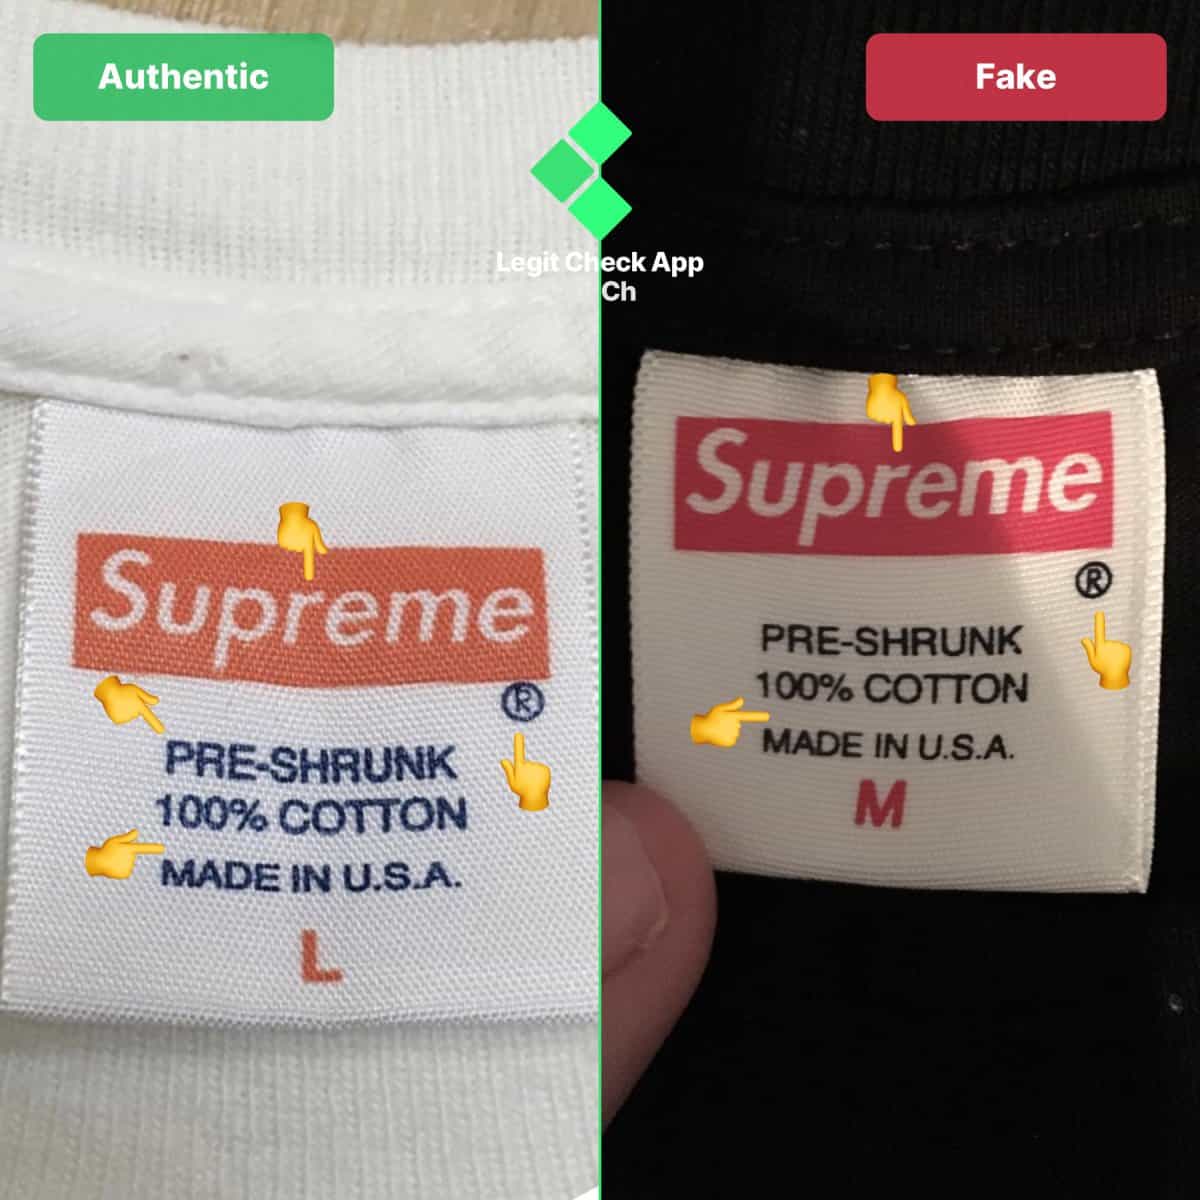 fake vs real supreme bogo tee